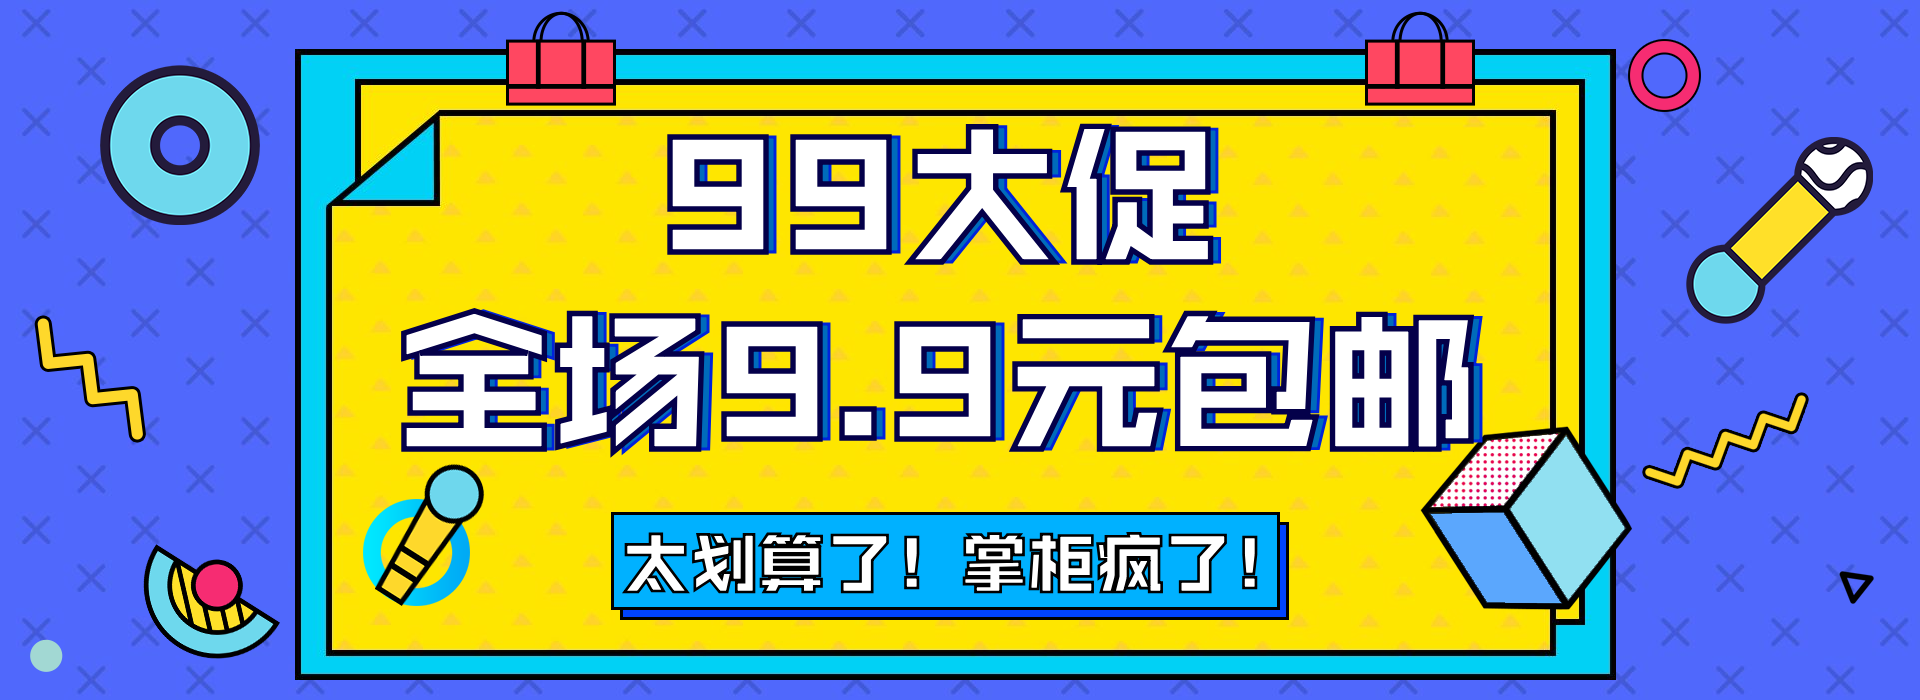 商品零售99划算节包邮卡通海报banner